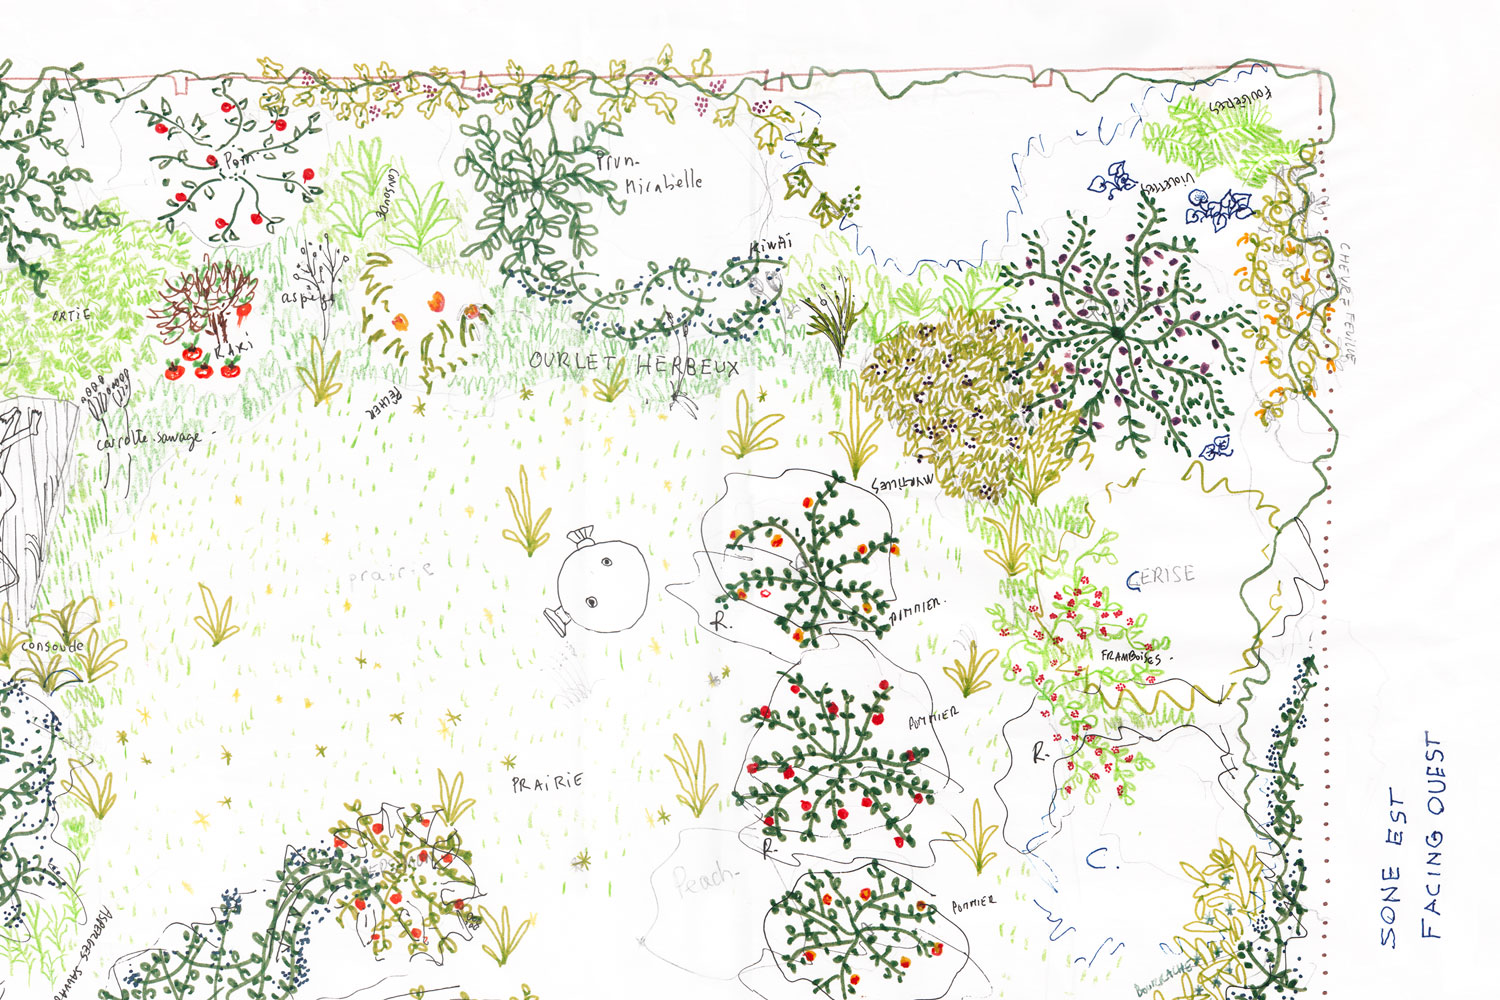 Un plan pour le jardin – Projet d’aménagement dans les limites du jardin par Louis Baguenault, Iris Lacoudre et Camille Sineau